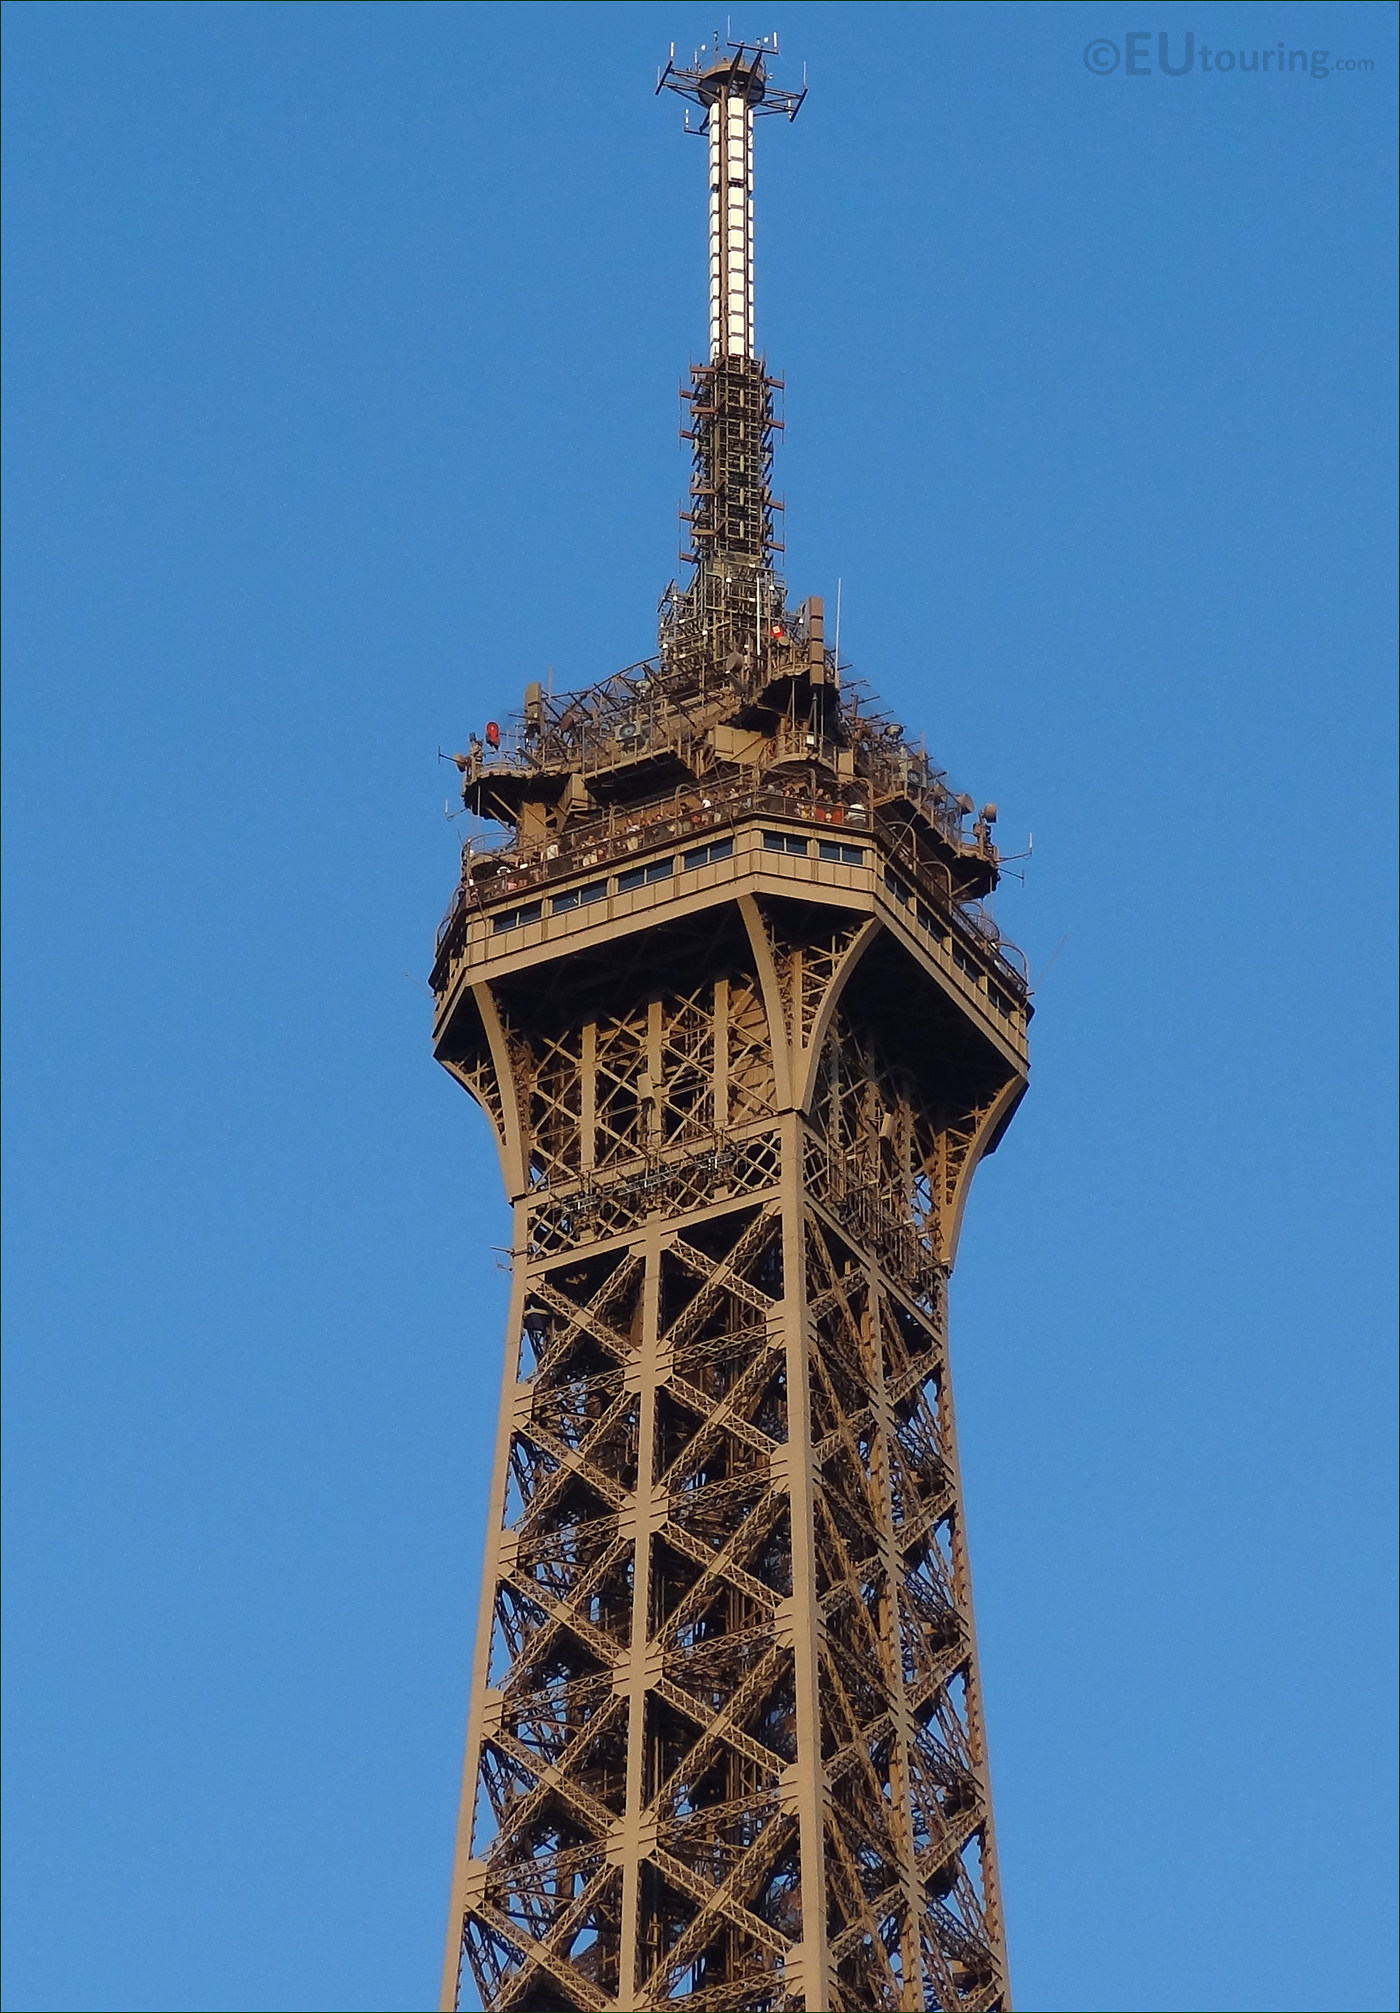 Eiffel Tower Details